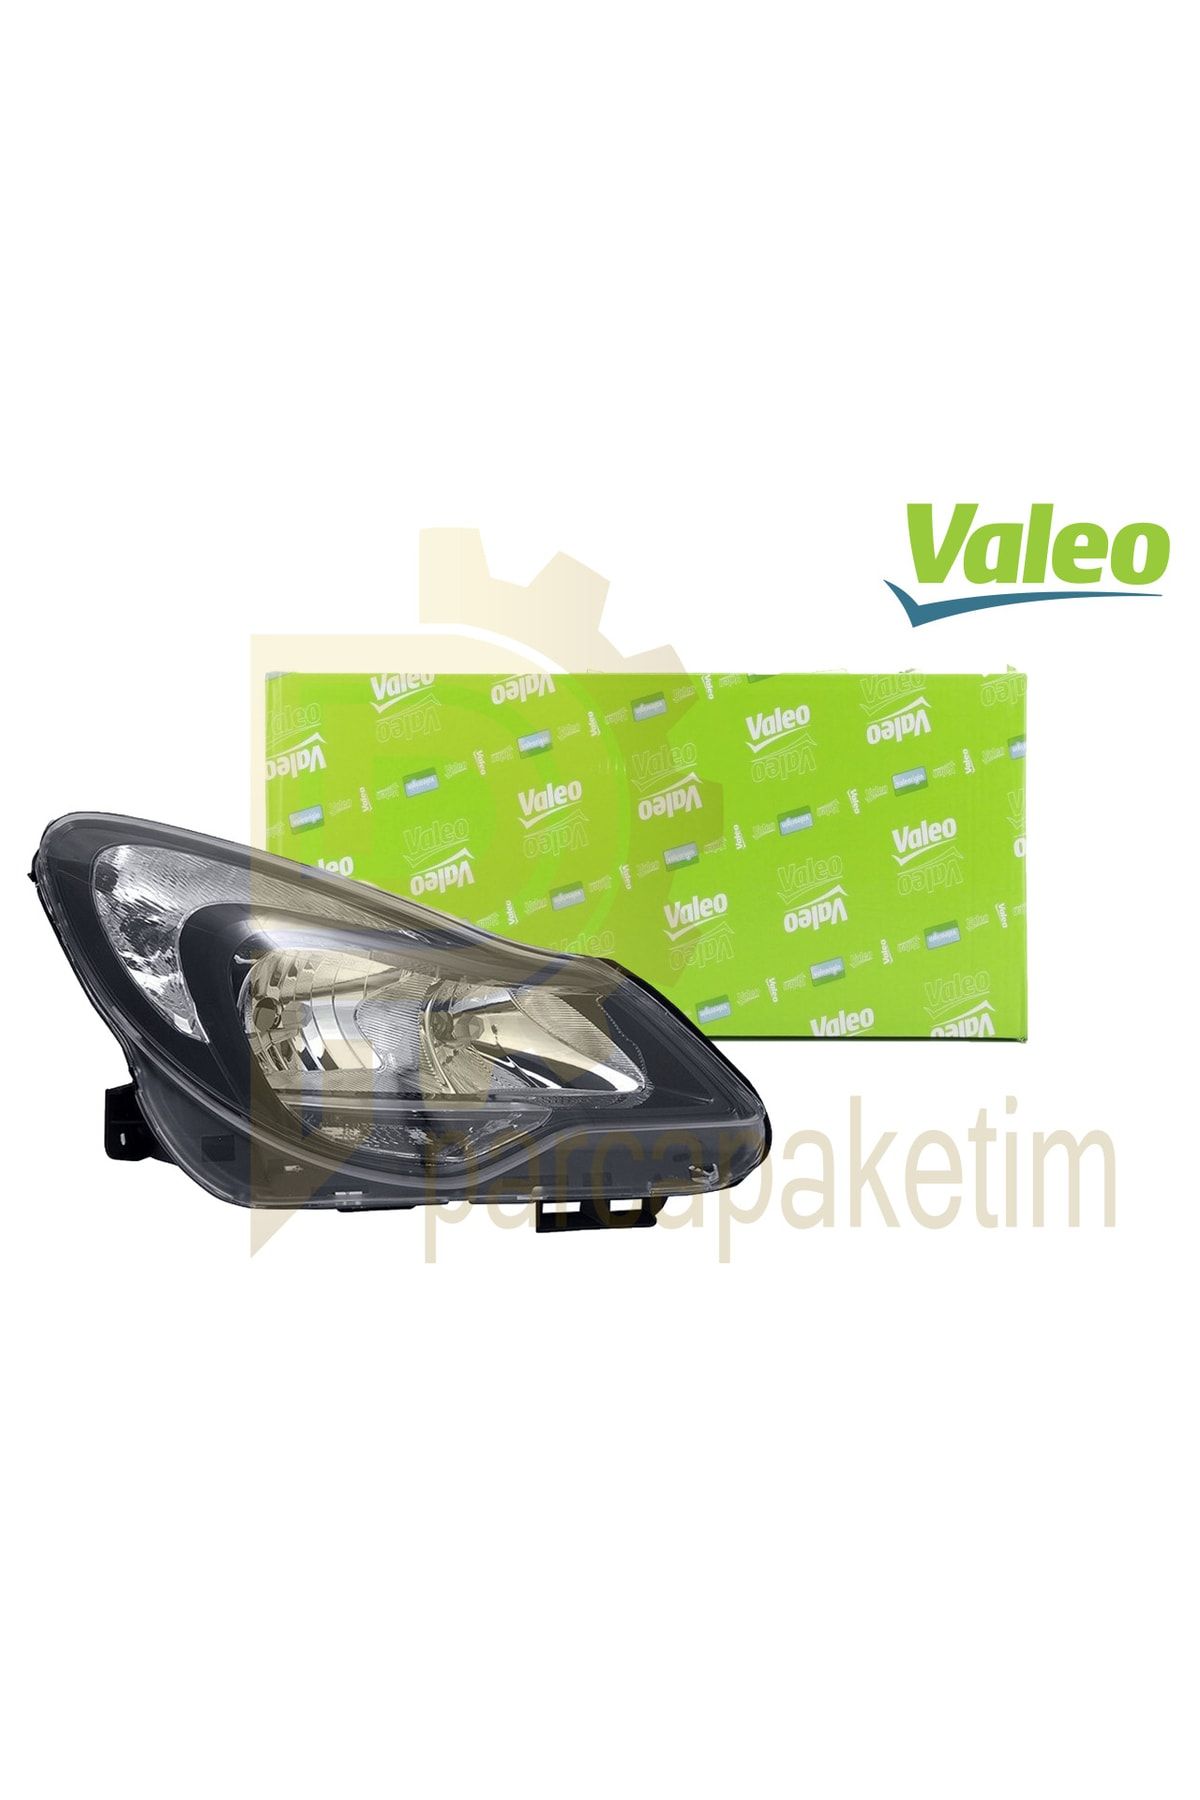 Valeo Opel Corsa D Far Sağ Siyah 2010-2014 [makyajlı] []  Uyumlu